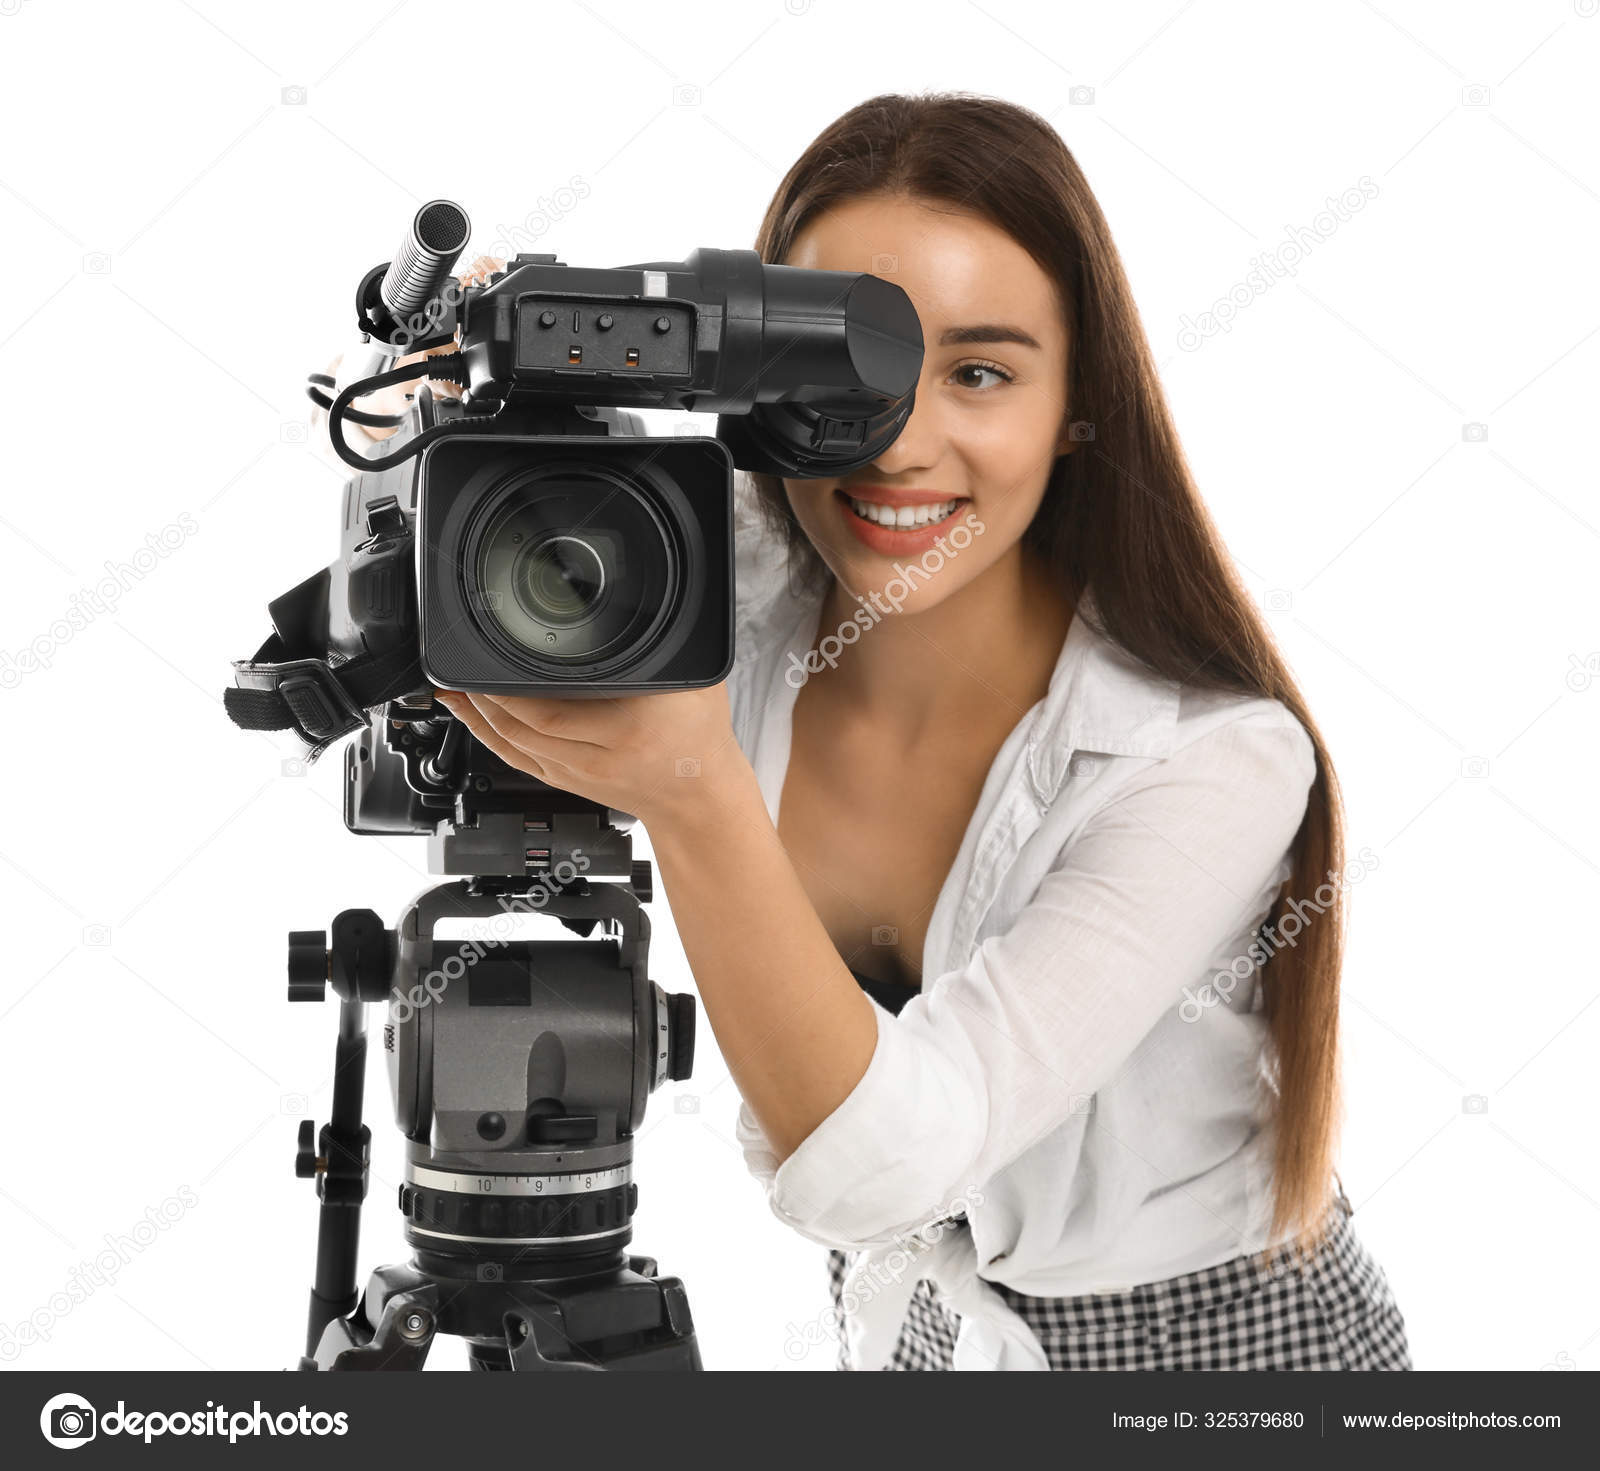 Với người điều khiển máy quay video chuyên nghiệp trên nền trắng, bạn sẽ trở thành những nhà làm phim chuyên nghiệp và tạo ra những sản phẩm đẳng cấp. Không chỉ có khả năng sáng tạo trong việc quay phim, bạn còn có thể quay video độ nét cao và kiểm soát chất lượng hình ảnh một cách dễ dàng. Hãy trổ tài và cùng chia sẻ những kỹ năng chuyên nghiệp nhất!